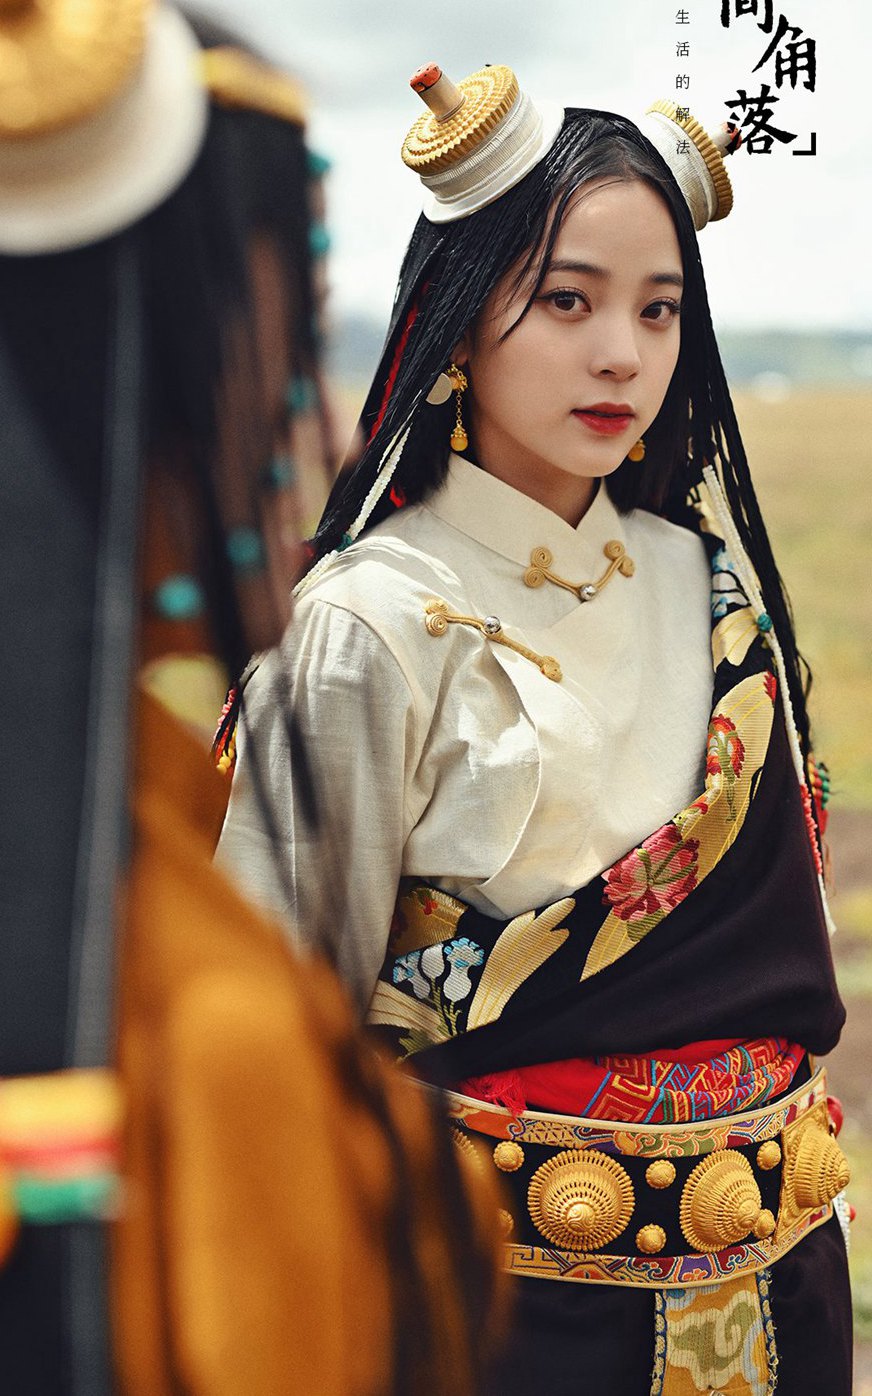 欧阳娜娜《奇遇·人间角落》理塘篇章穿藏族服饰图片  第1张